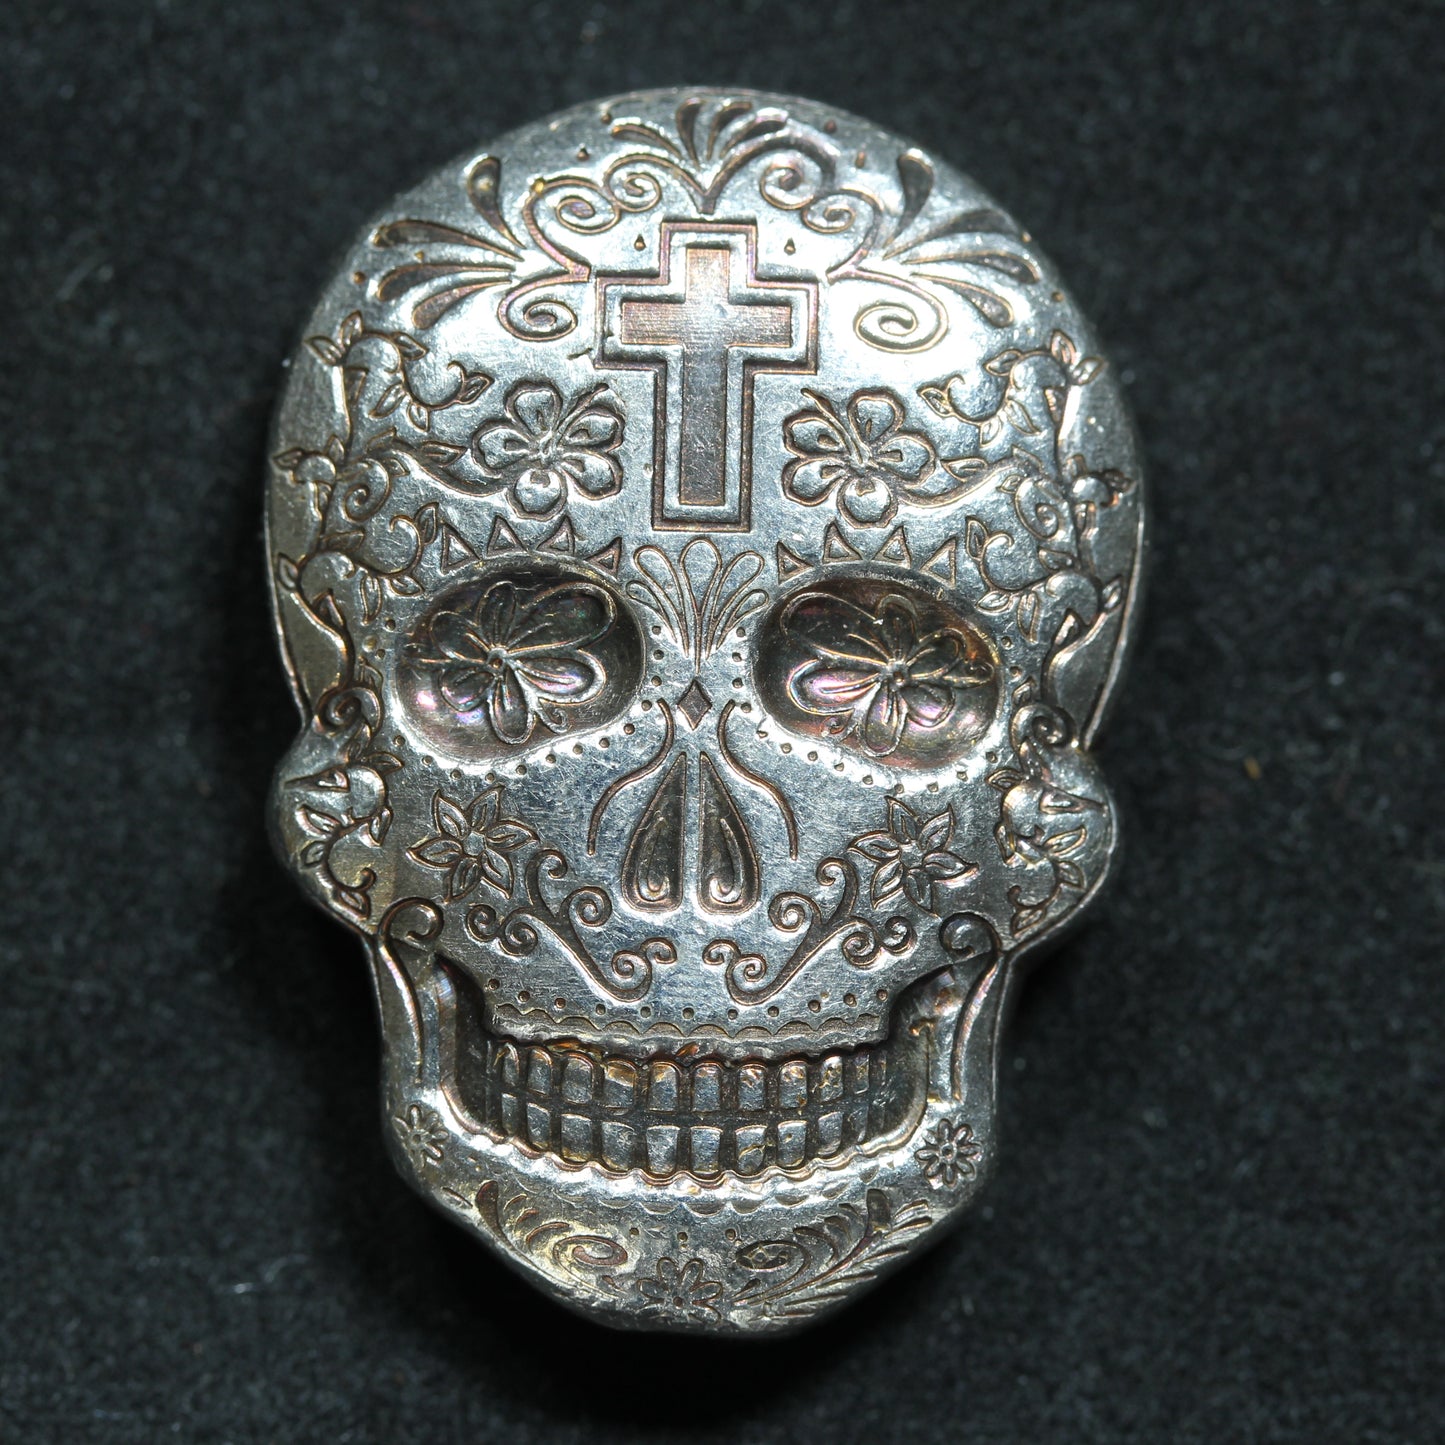 2 oz Silver Skull - Monarch Precious Metals (Day of the Dead)